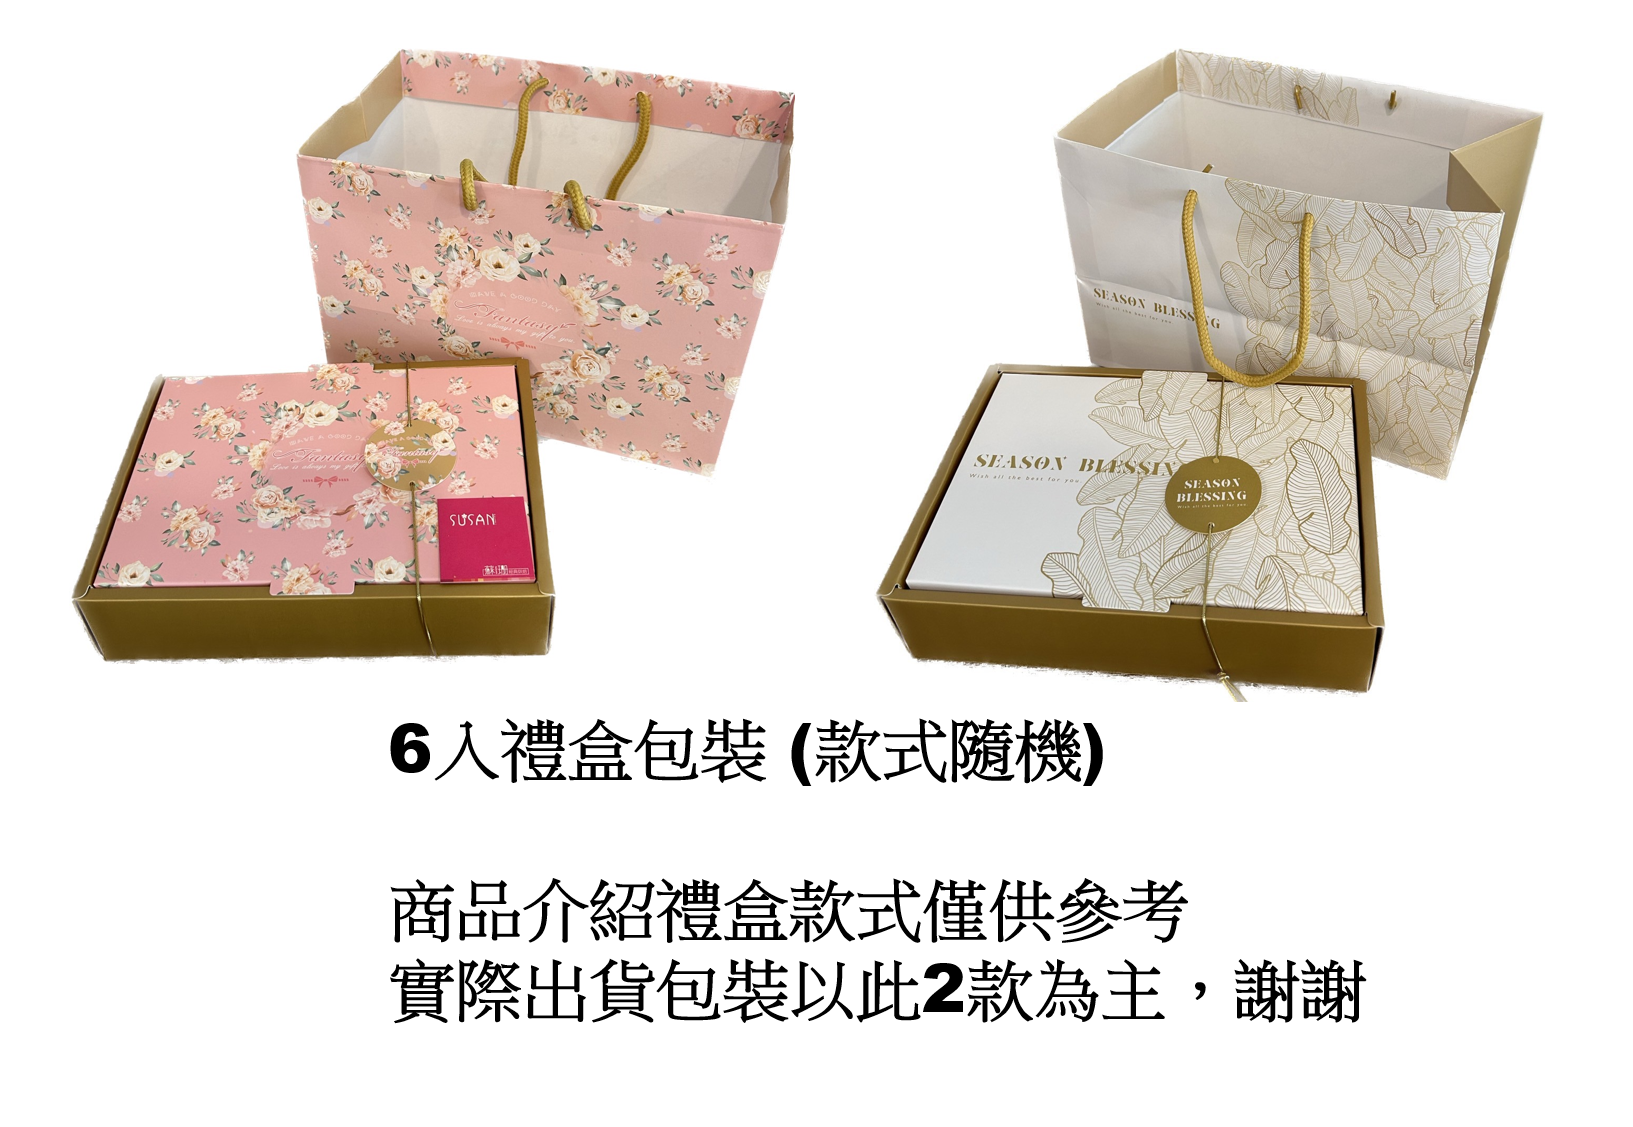 【蘇珊烘焙】玫瑰月餅禮盒(2入/6入禮盒) 台中十大伴手禮